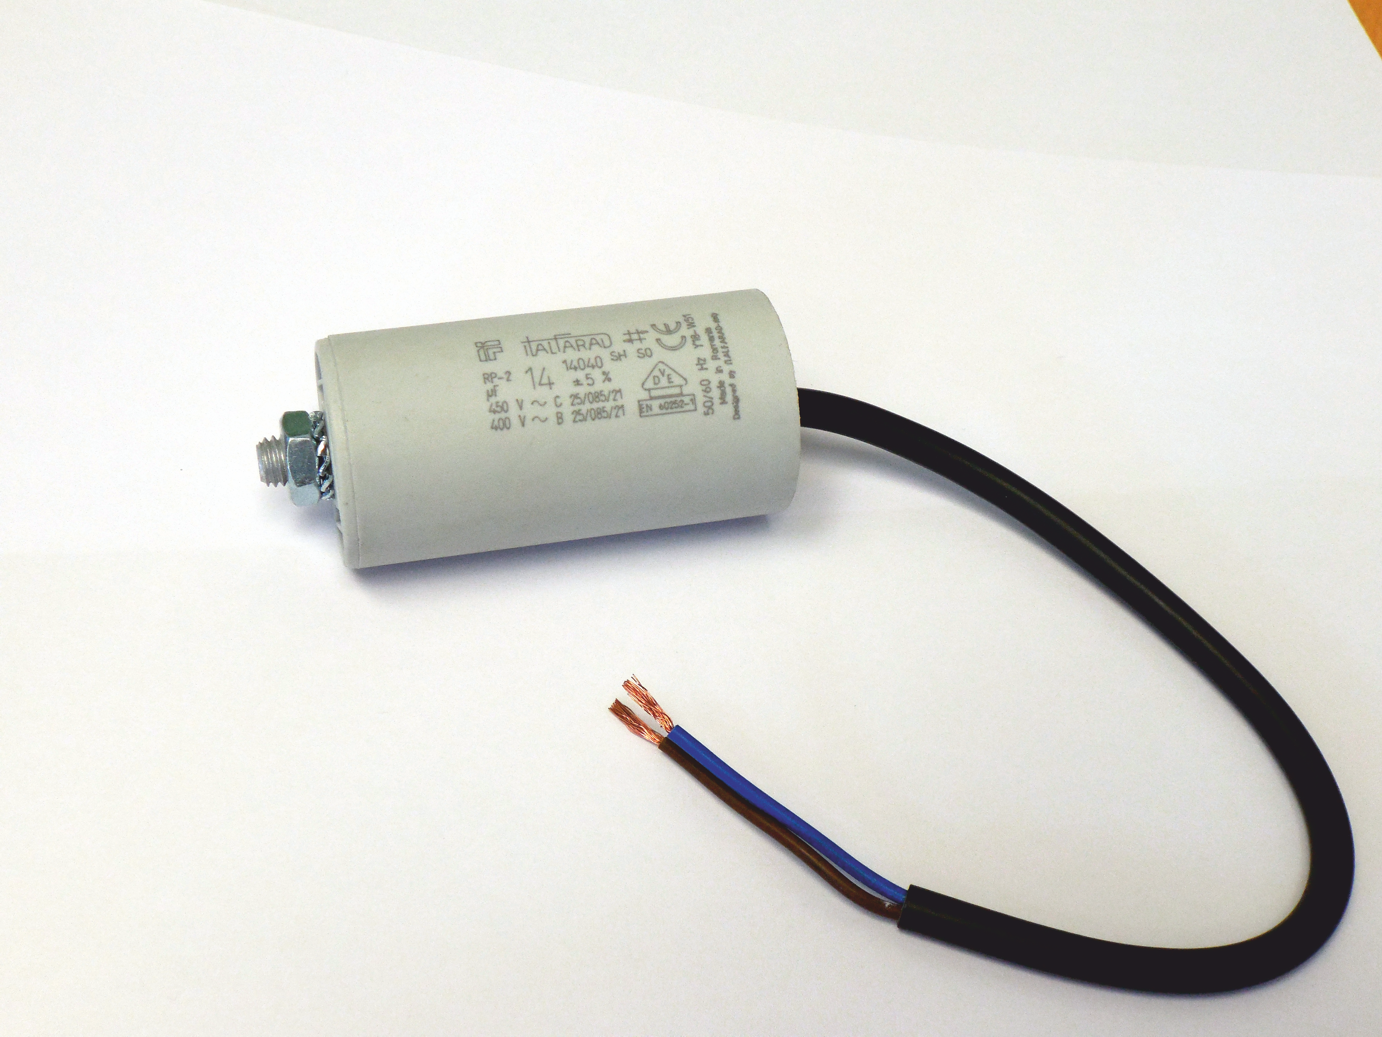 Condensador arranque motor electrico 2.0 uF 450 V con cable  Blanco